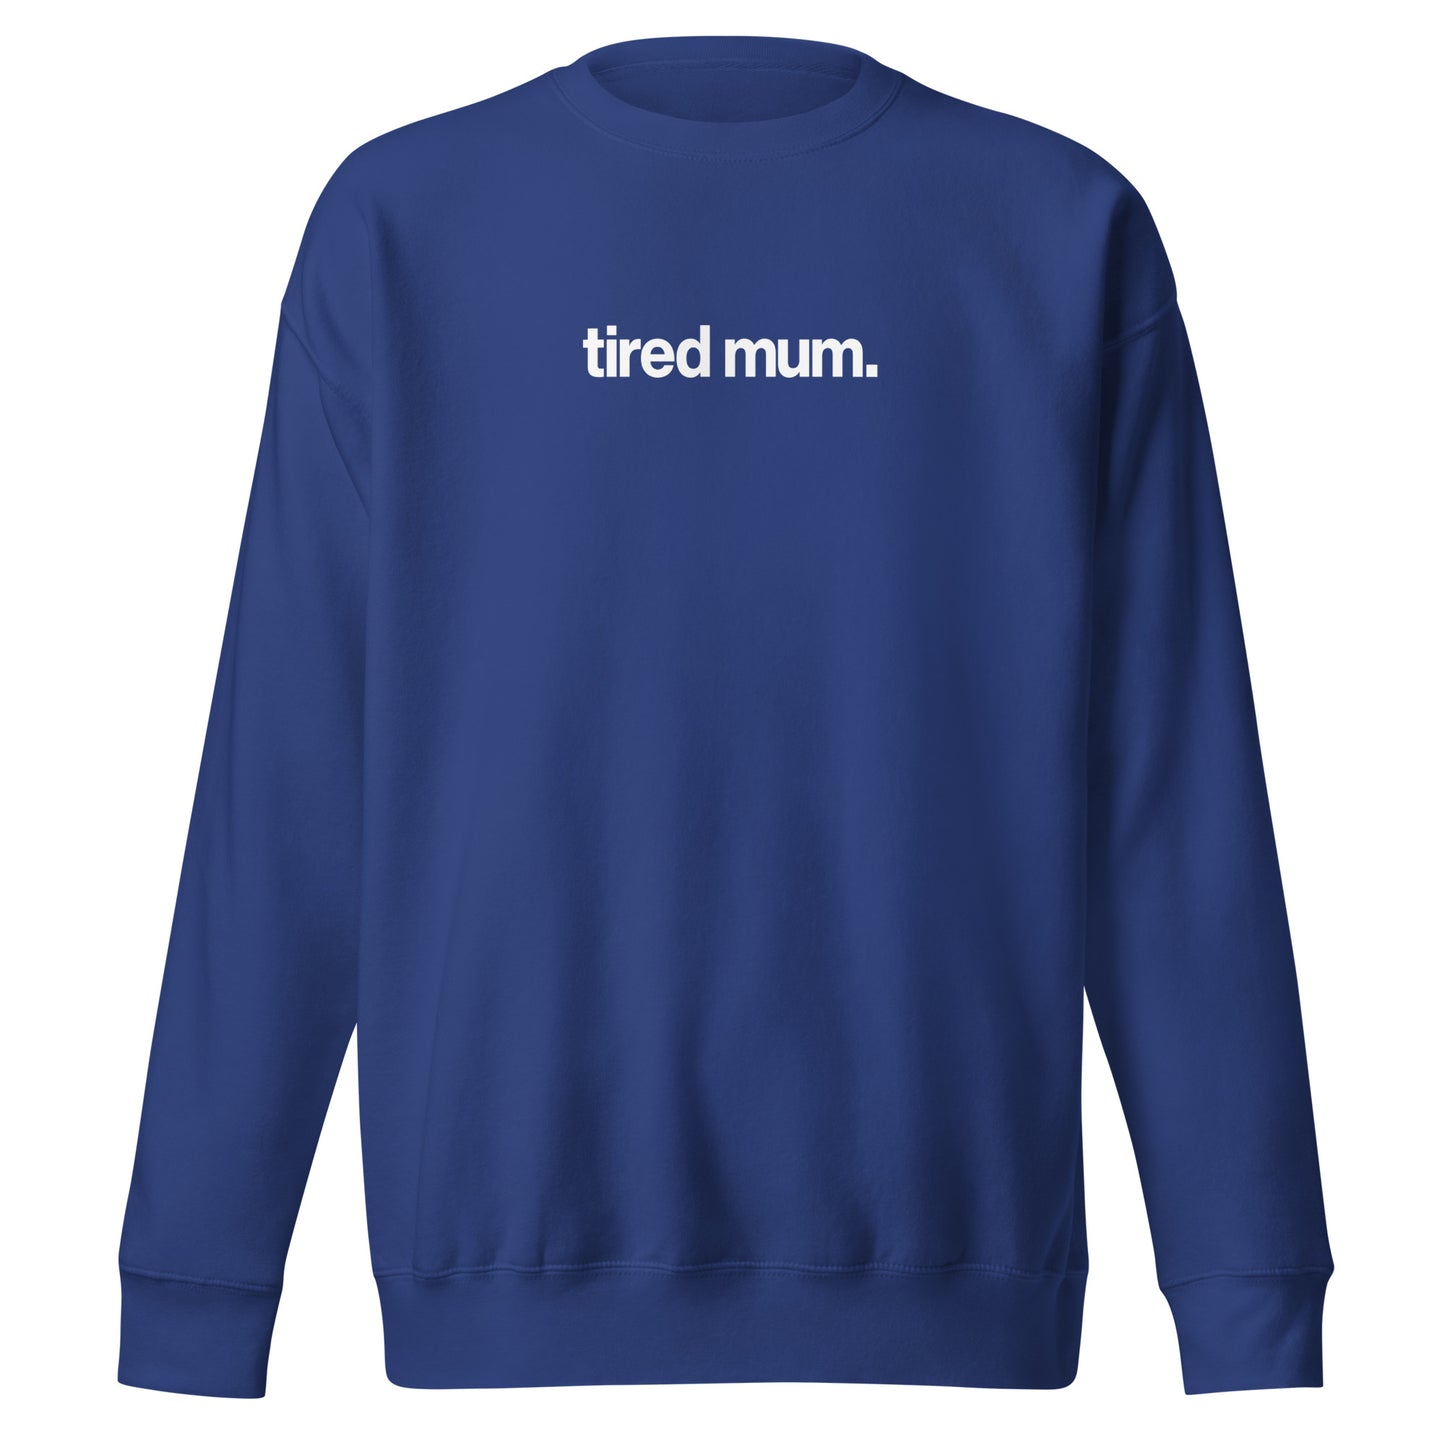 "tired mum." sweatshirt